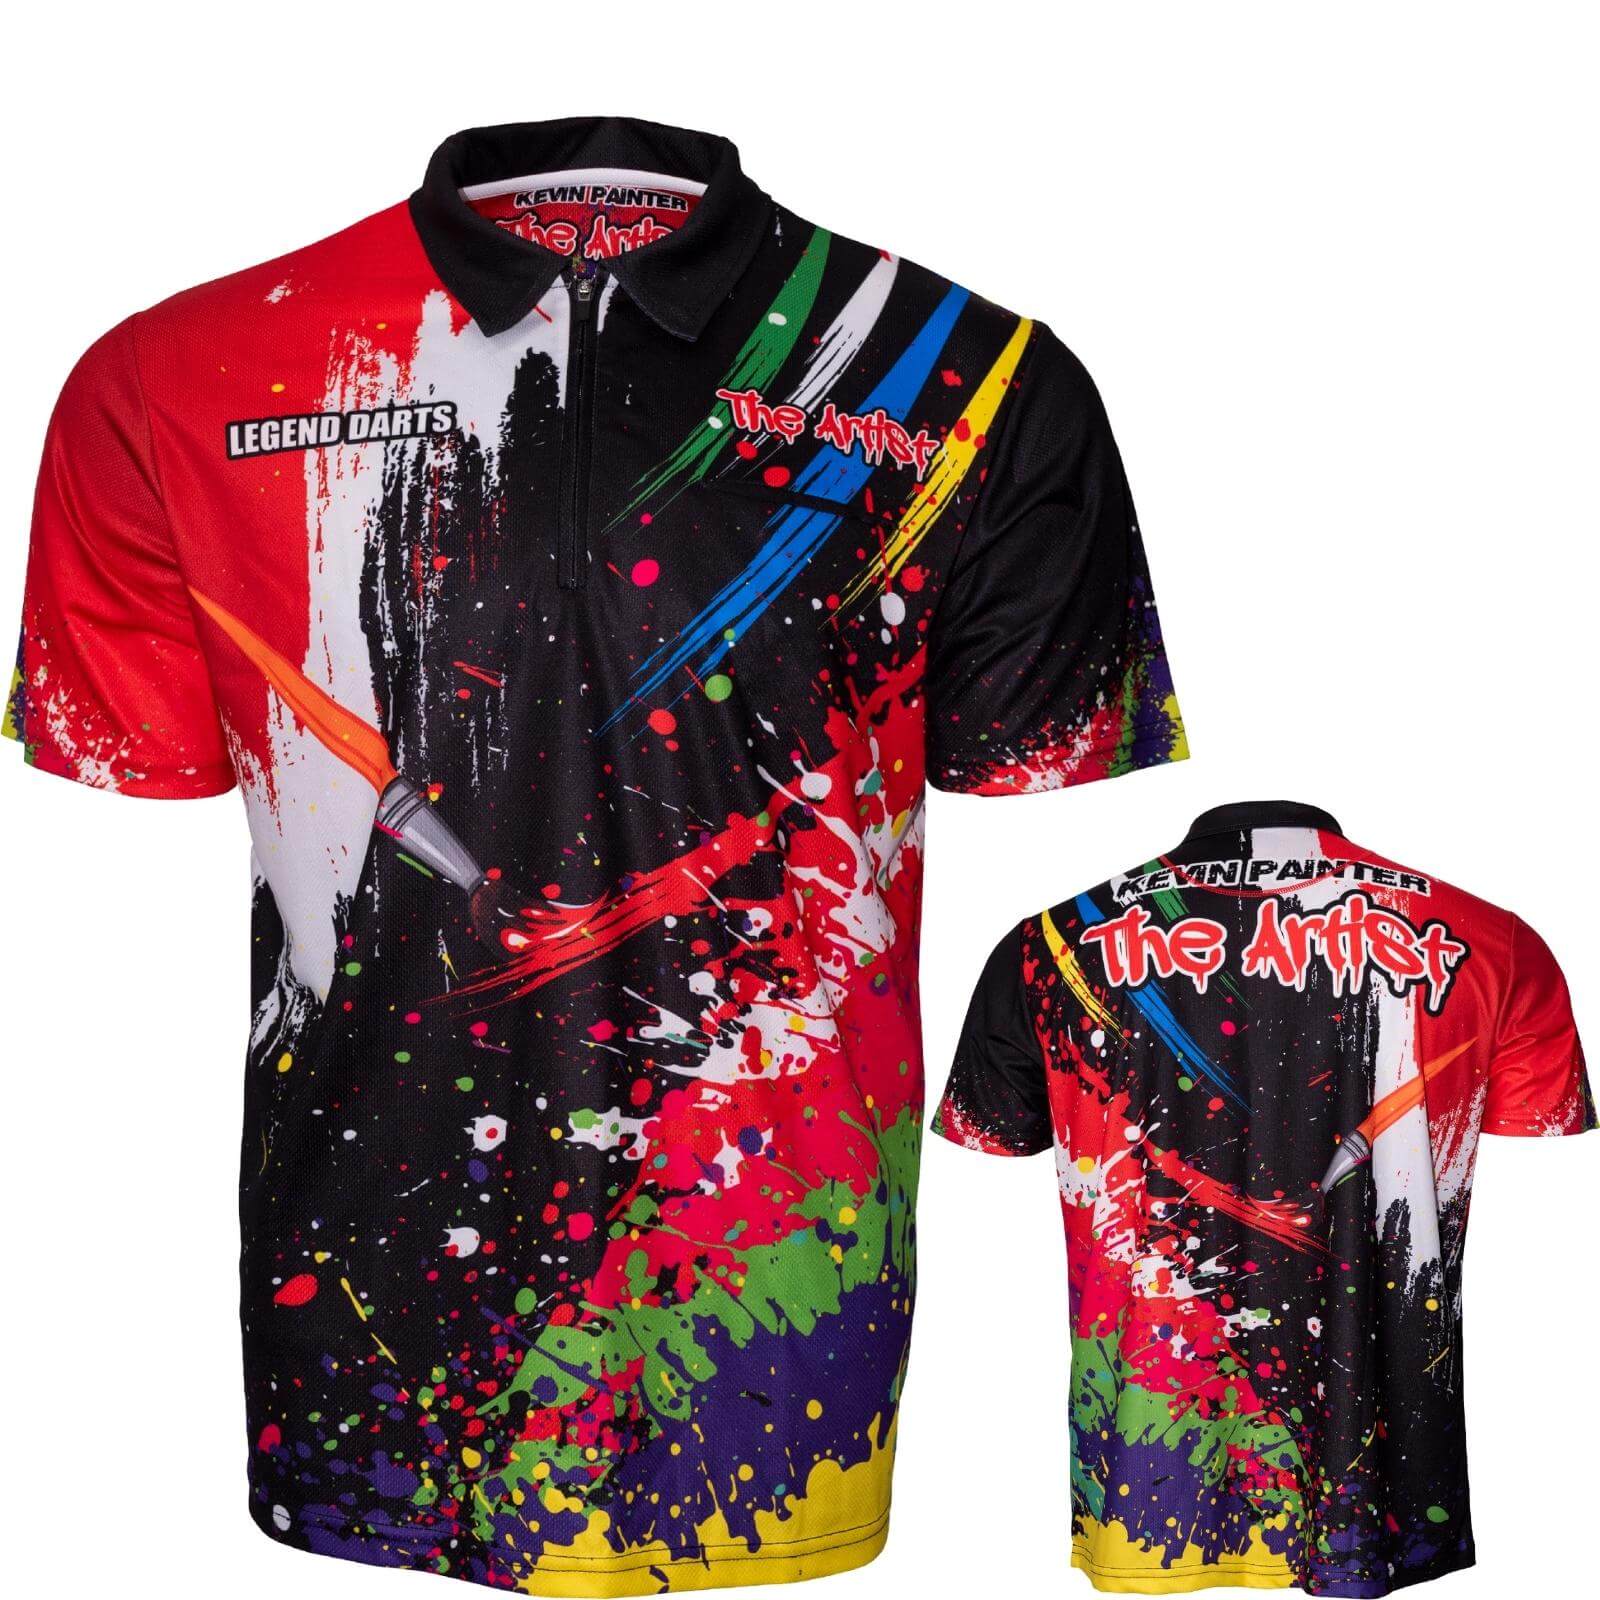 Dart Shirts - Legend Darts - Kevin Painter - The Artist - Dart Shirt - S to 4XL 